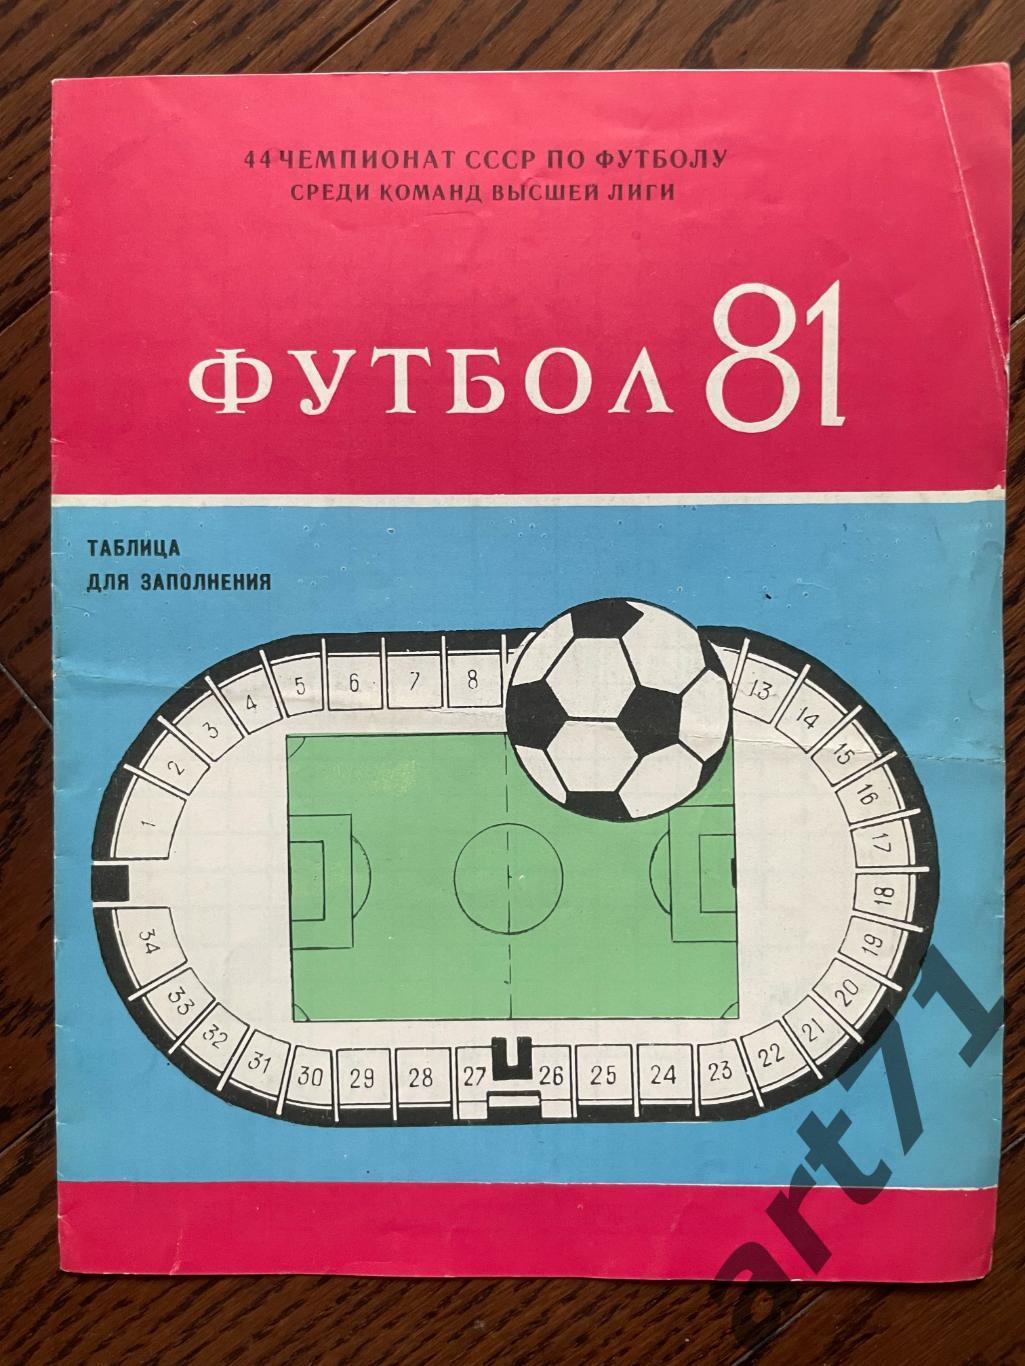 Шахтер Донецк 1981, таблица для заполнения, календарь игр